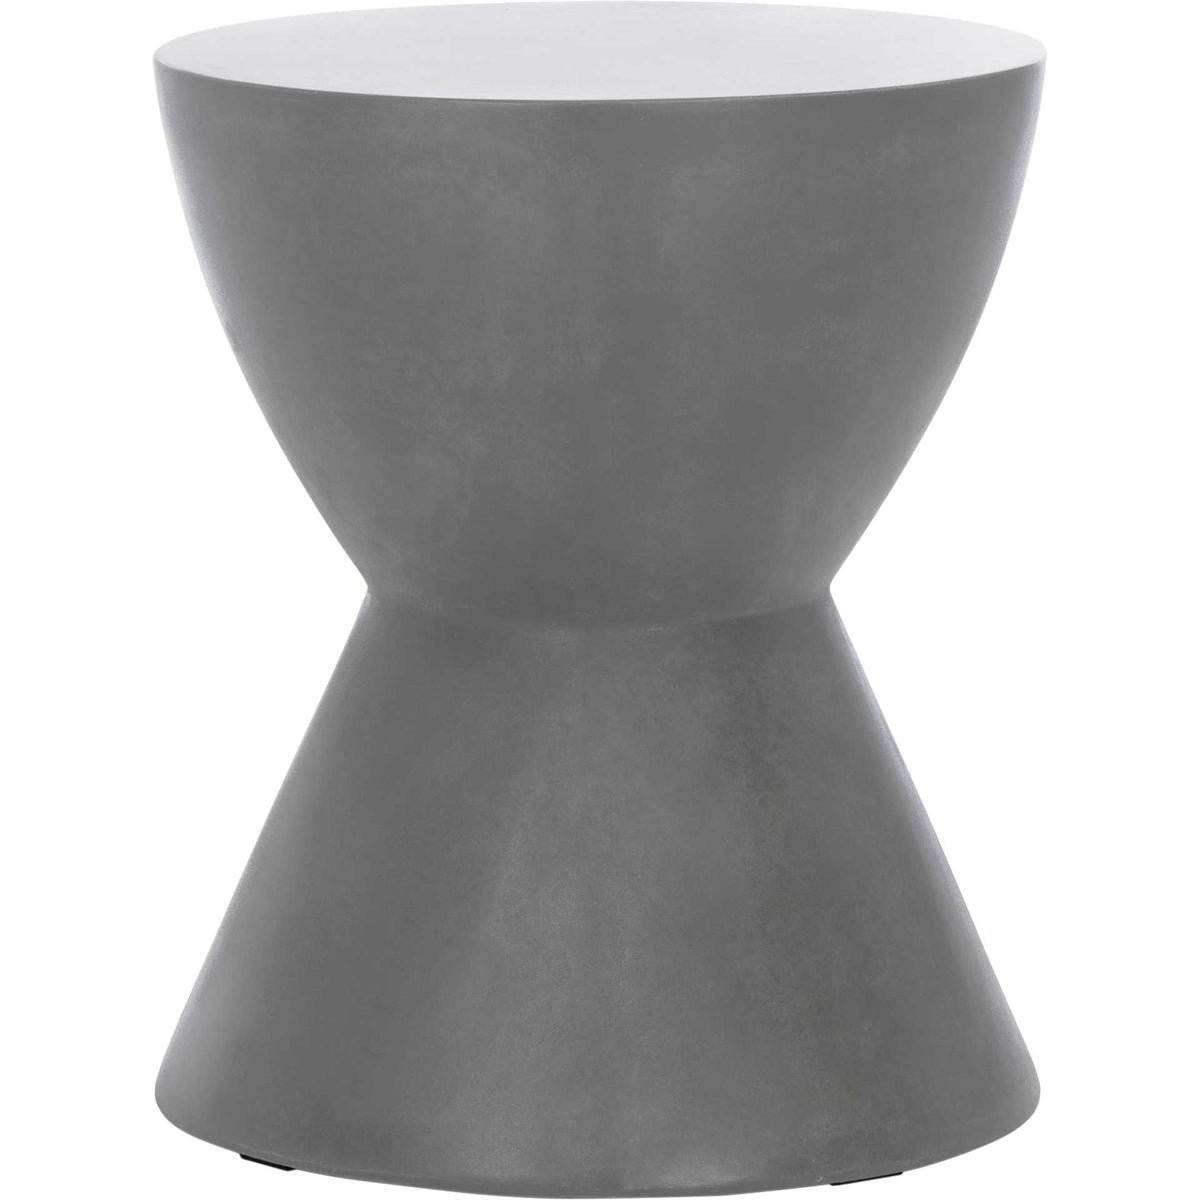 Atalia Modern Concrete Round Accent Table Dark Gray